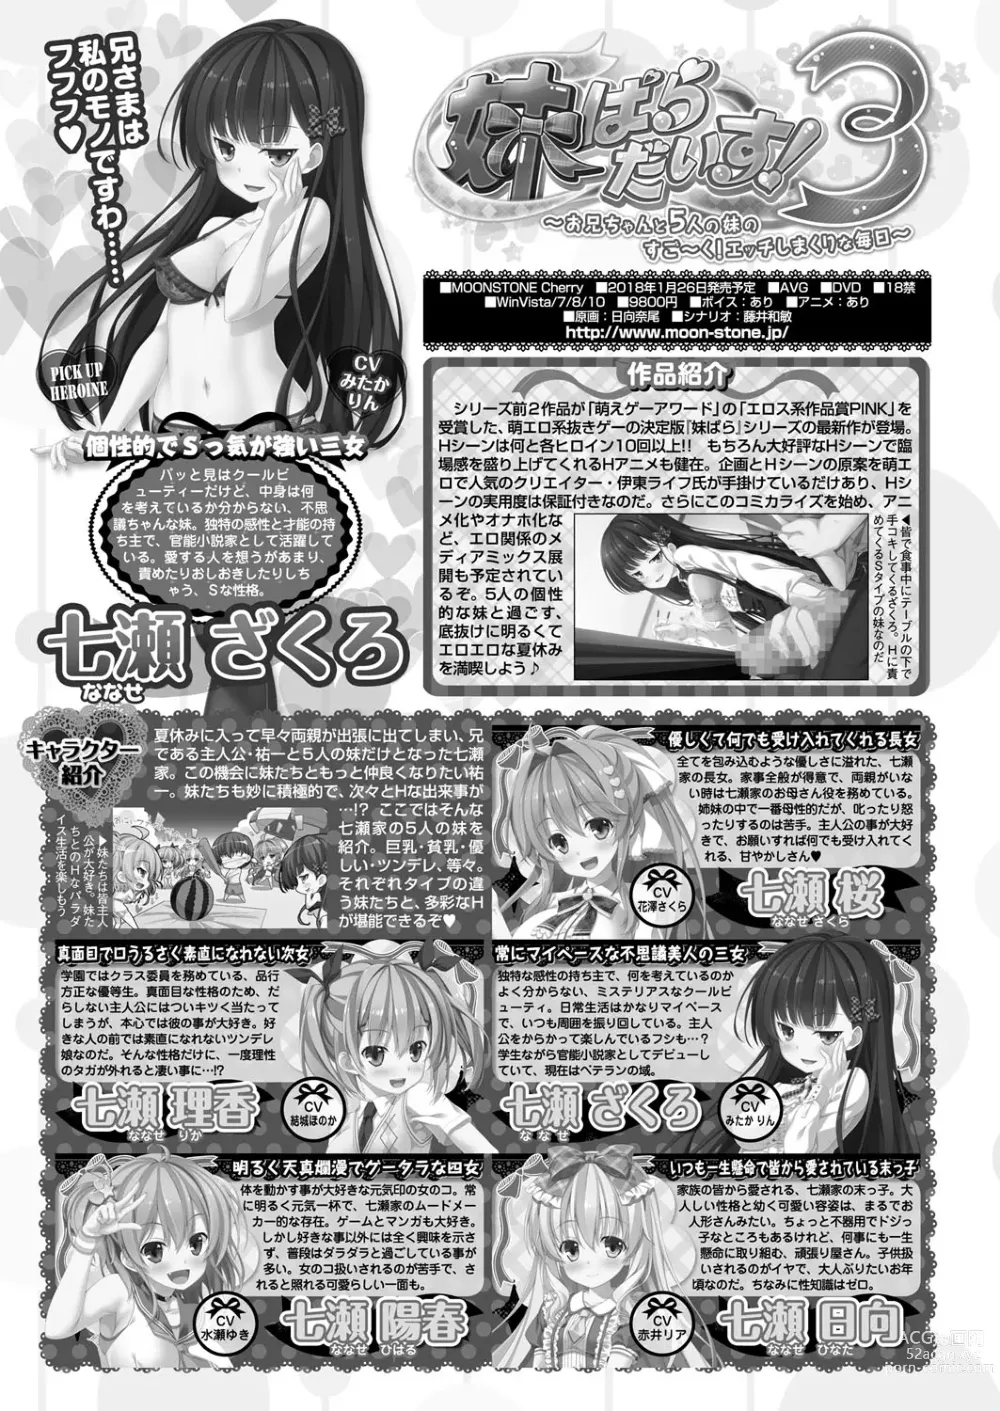 Page 206 of manga BugBug 2018-02